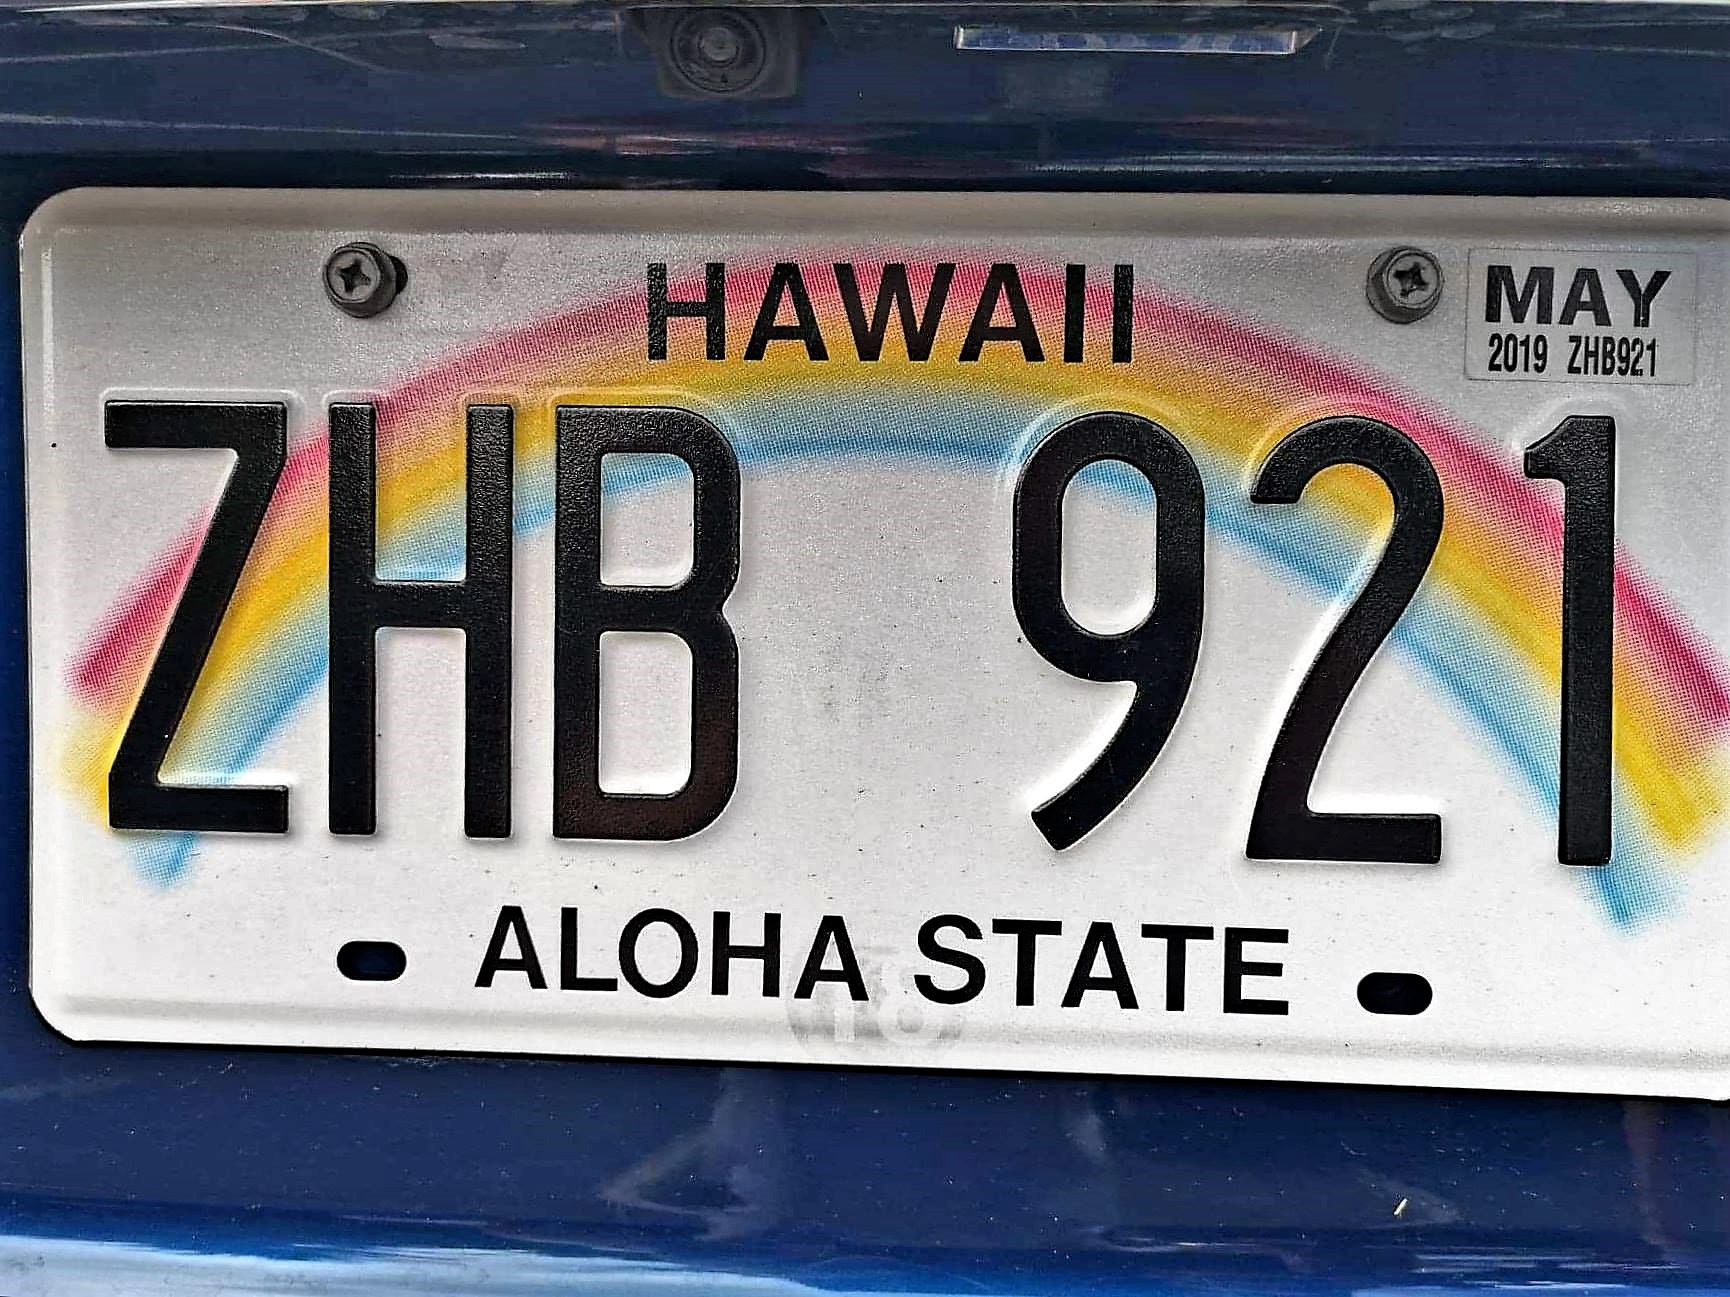 Hawaii Cruise 2022 - autonummerplaat